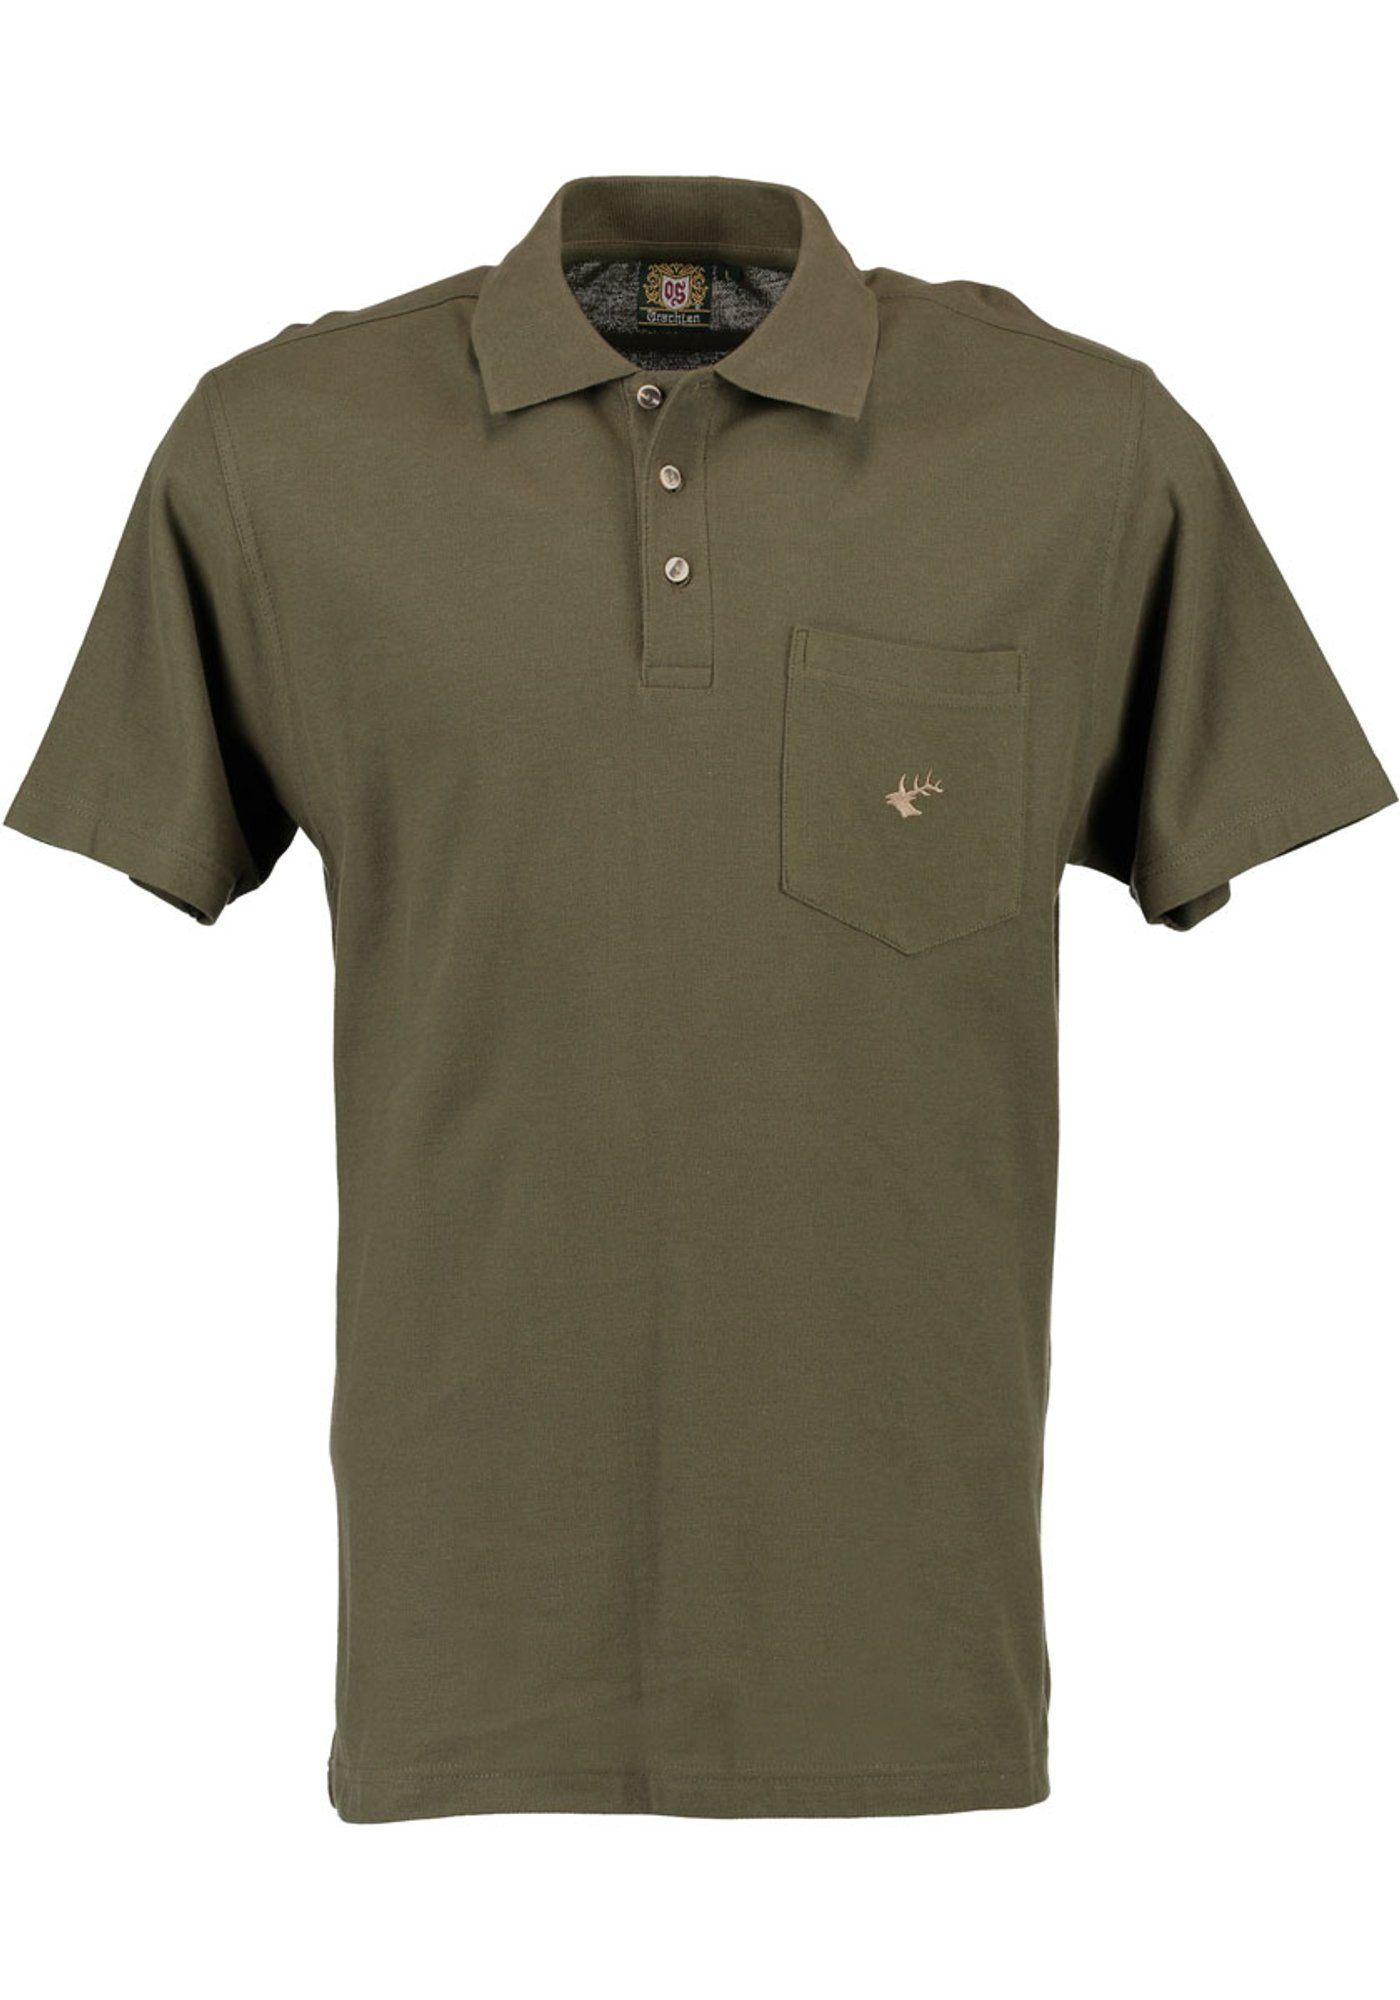 der Poloshirt mit Hirsch-Stickerei Brusttasche Kurzarm Jagdshirt Balun OS-Trachten auf